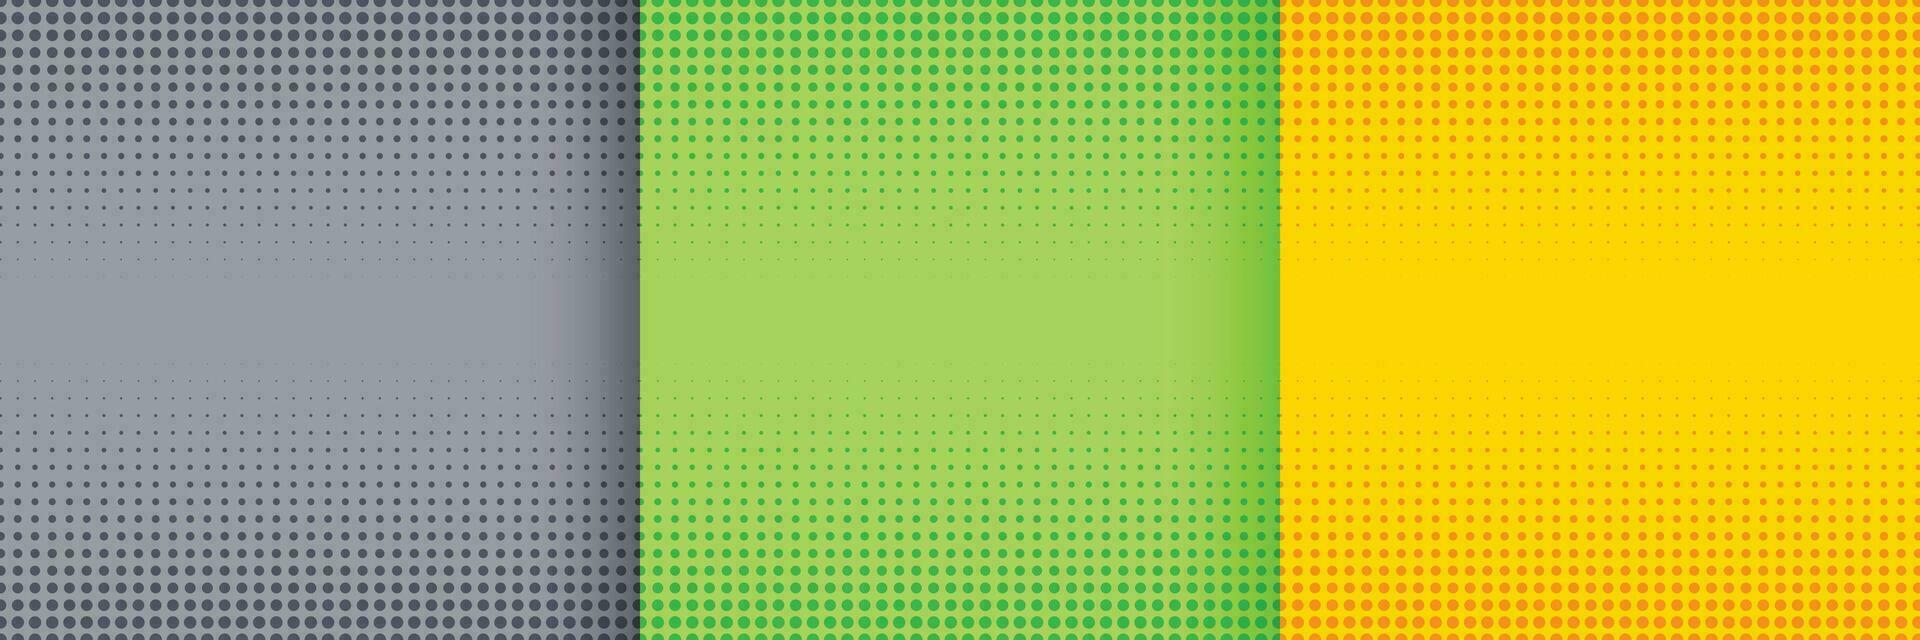 nett Halbton Hintergrund einstellen im grau Grün und Gelb Farben vektor